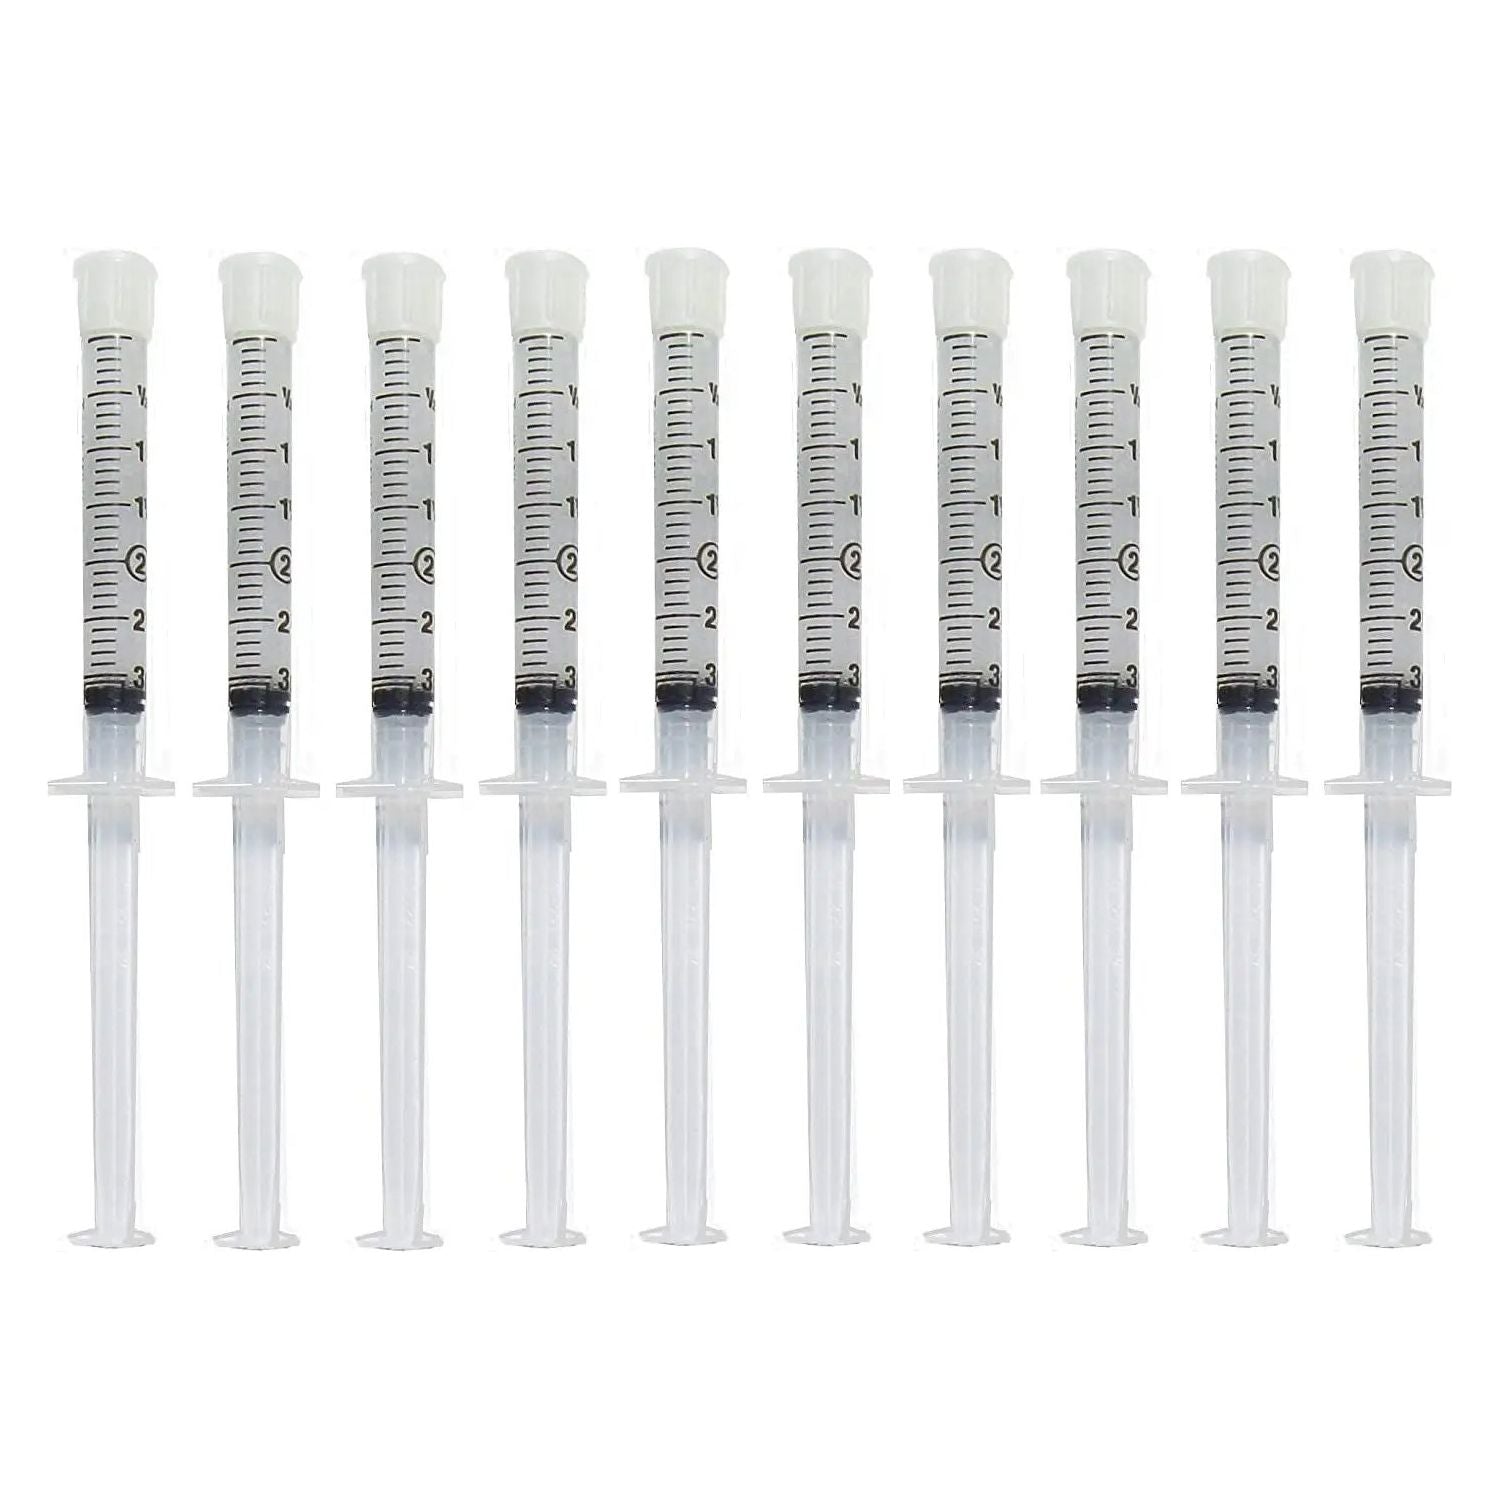 Teeth Whitening Gel Syringe Dispensers 22% Carbamide Peroxide, 10 Tooth Bleaching Gel 3Ml Syringes